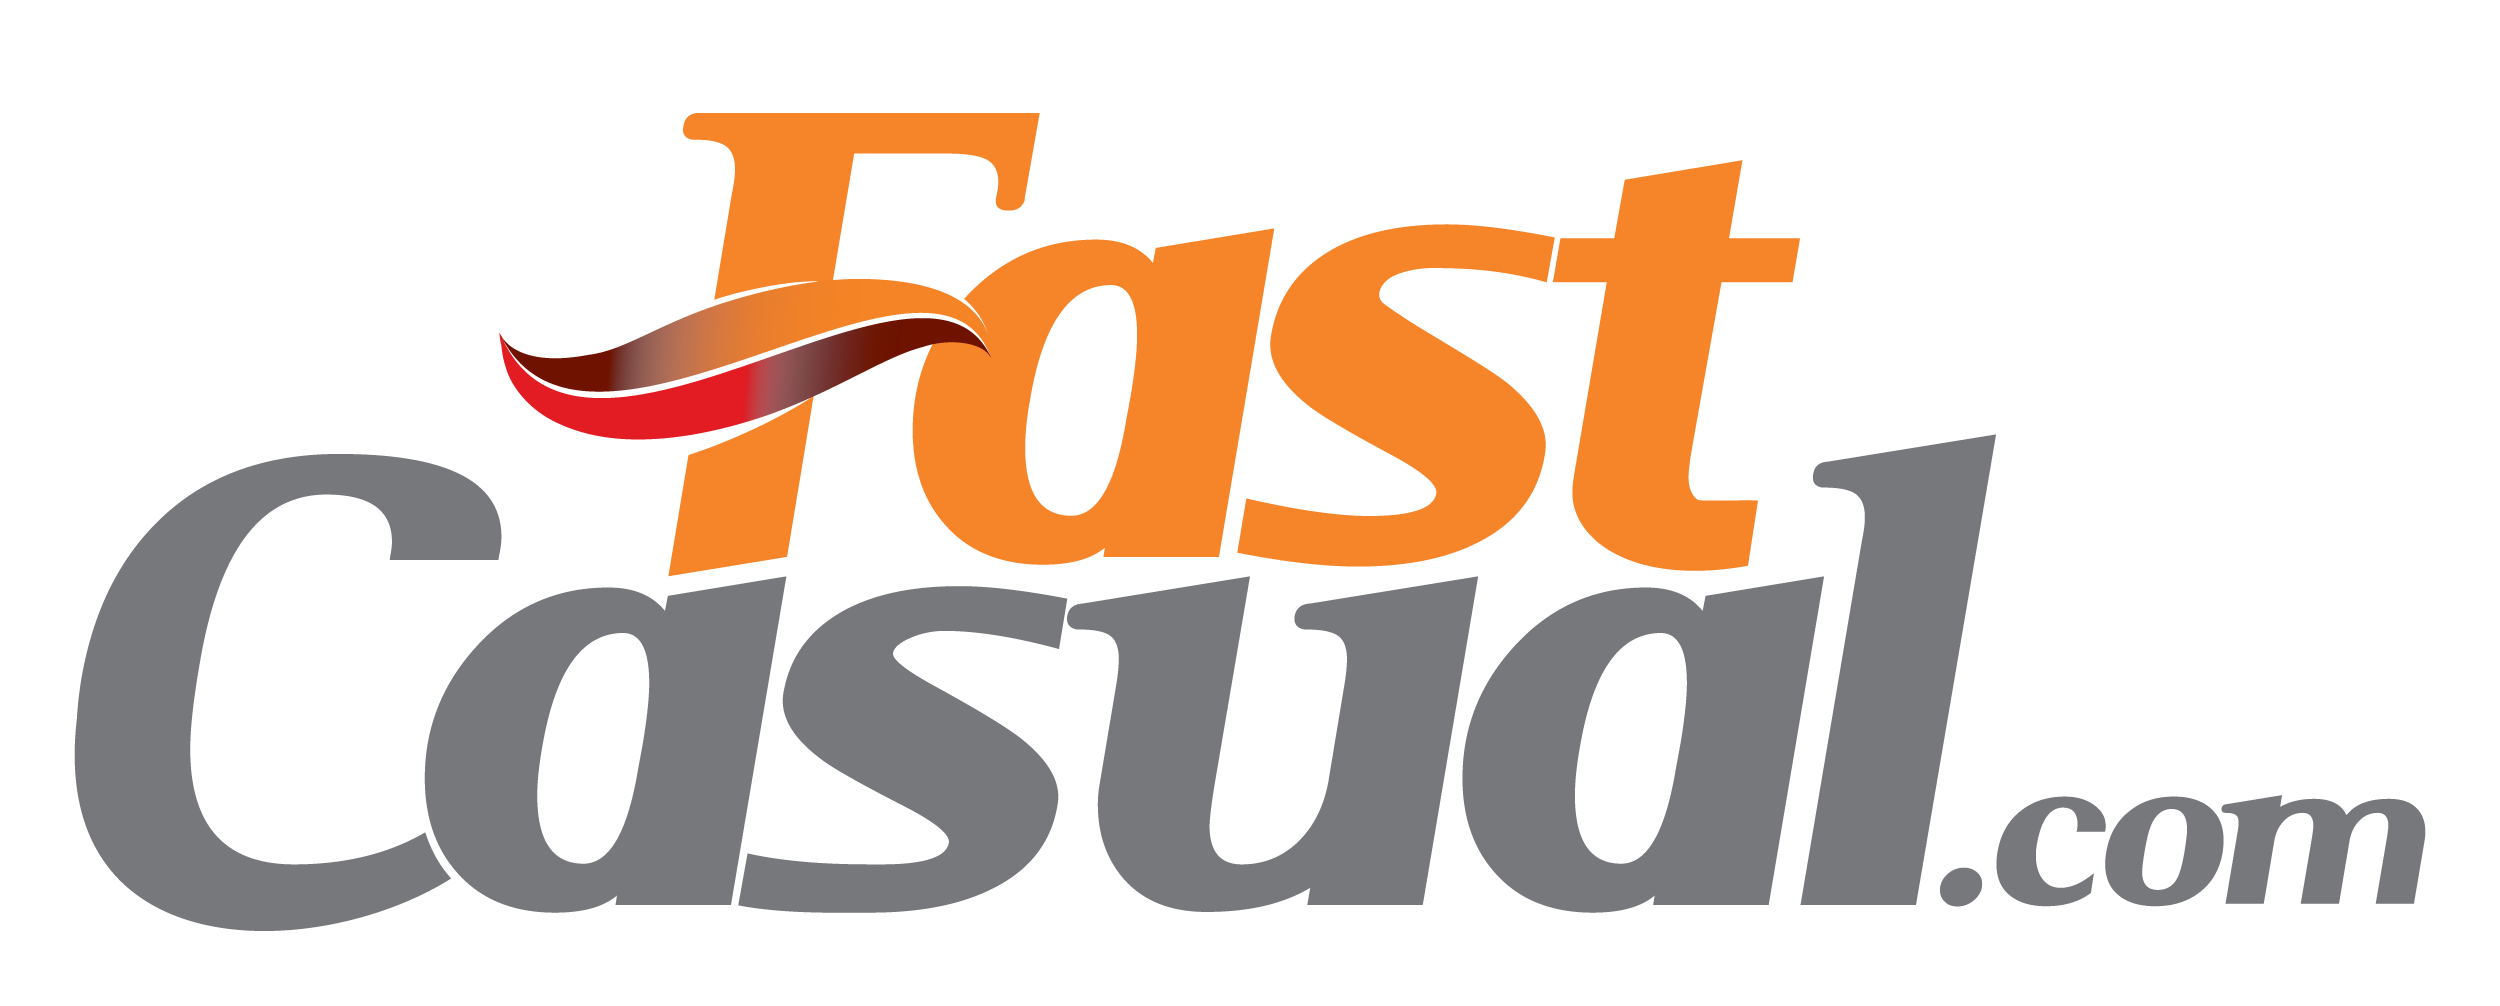 FastCasual.com